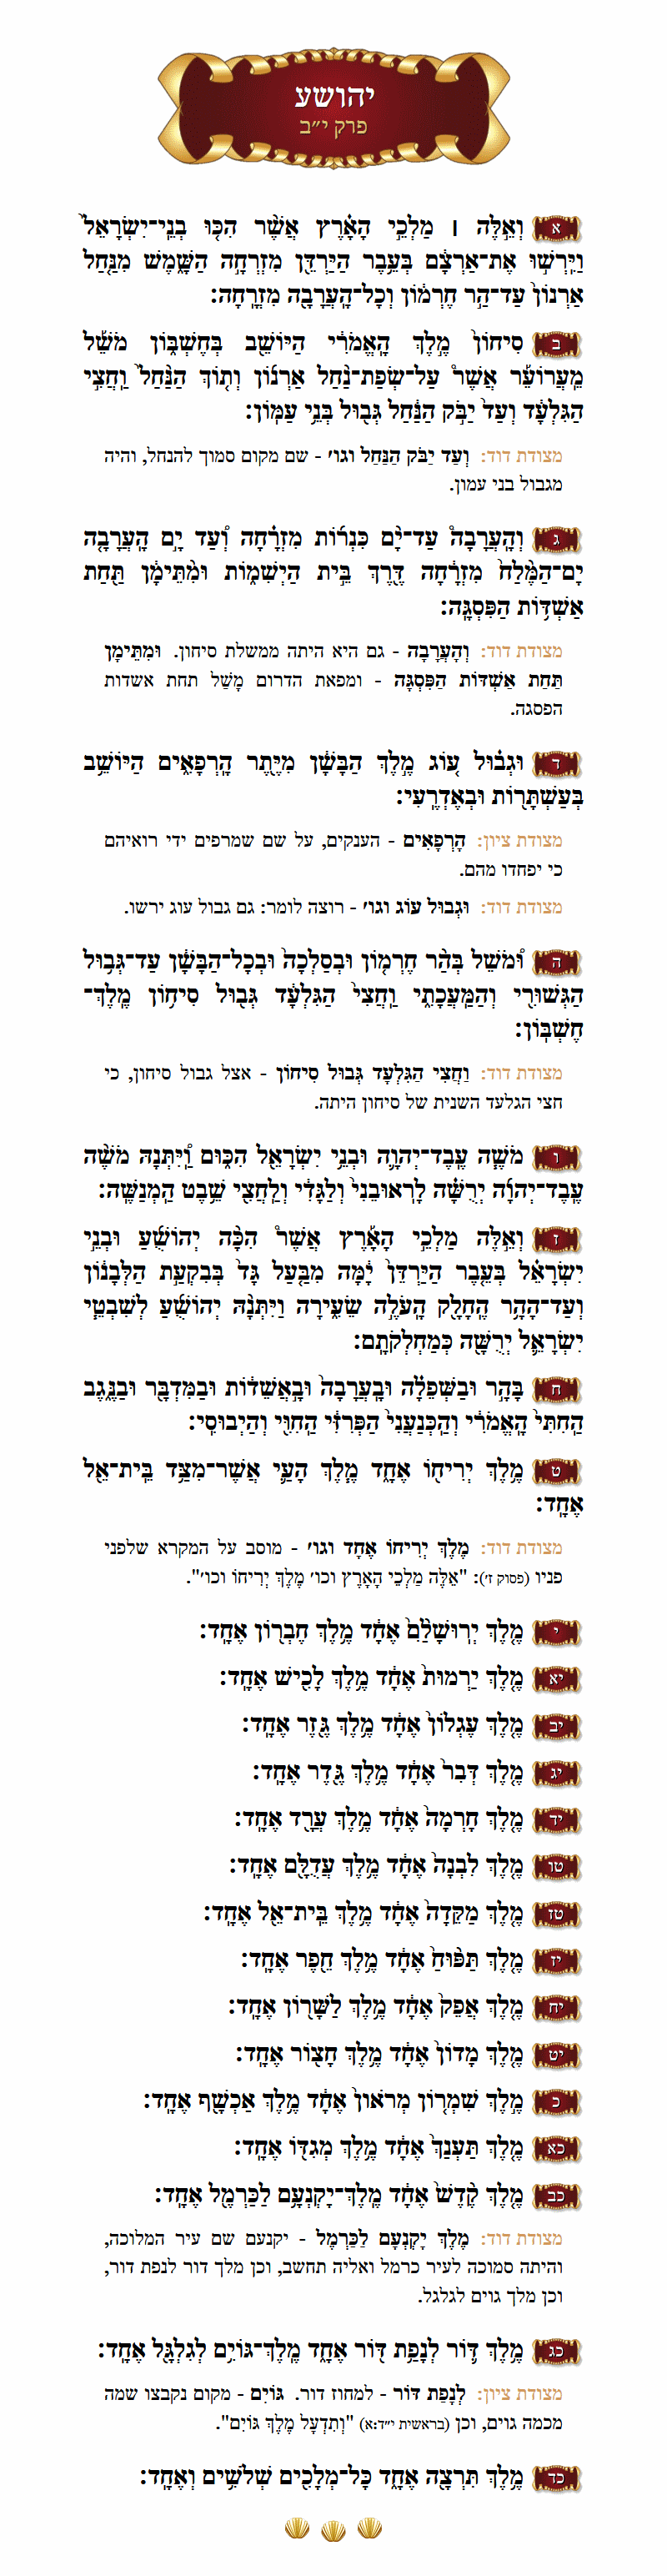 ספר יהושע פרק י״ב עם מפרשים